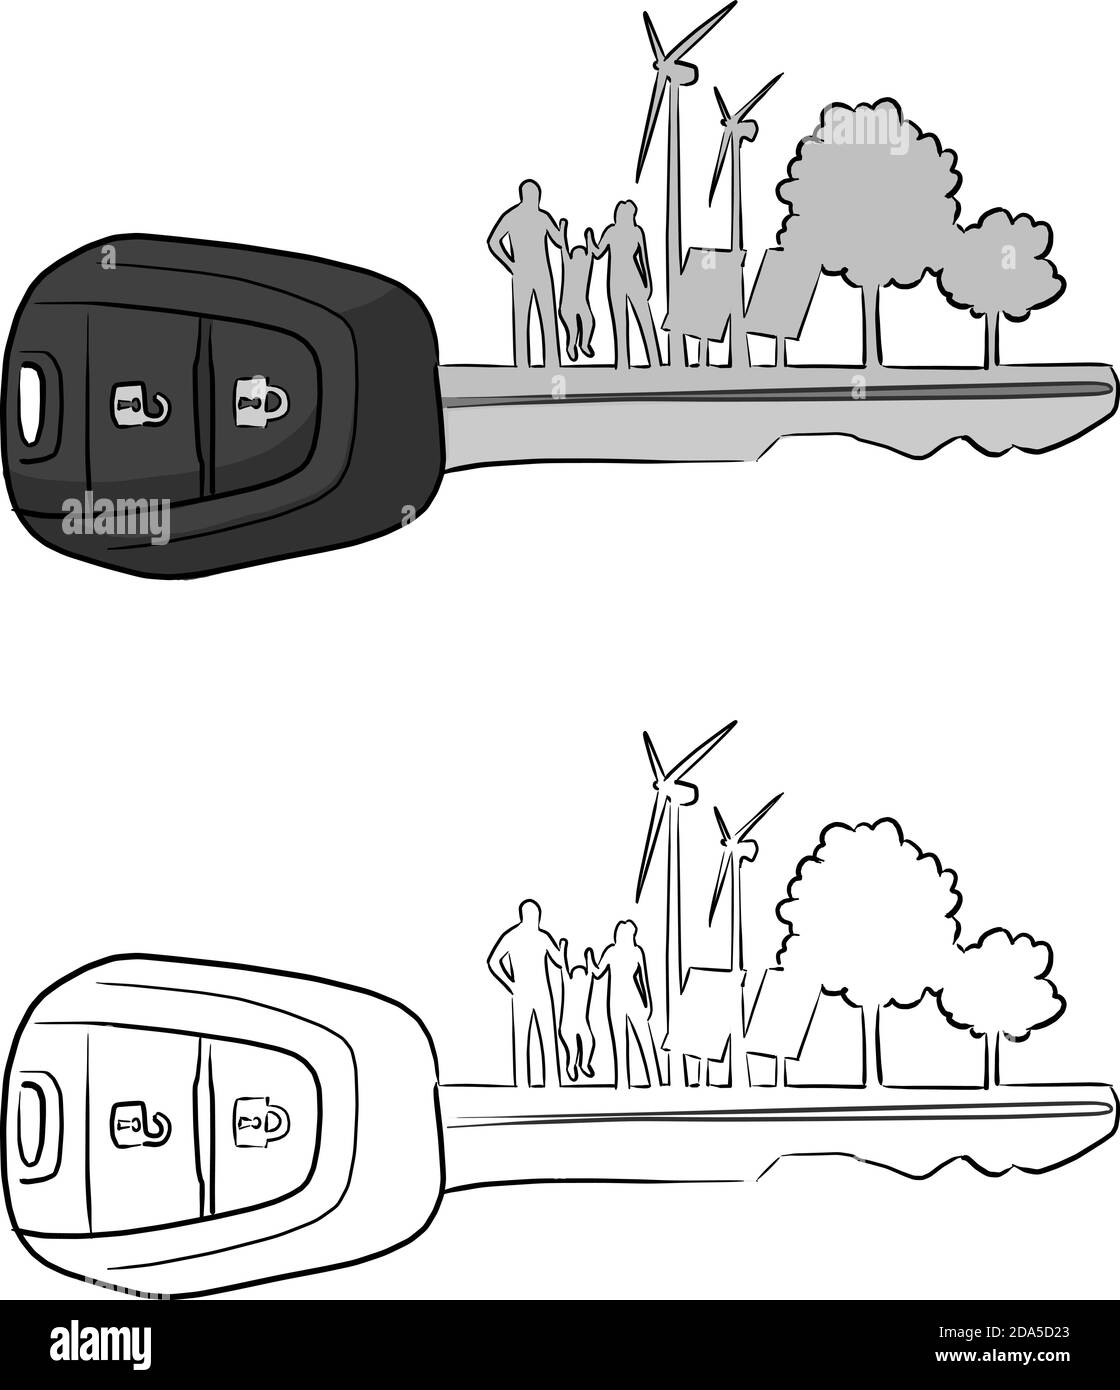 chiave auto con silhouette di famiglia turbina eolica a celle solari e alberi illustrazione vettoriale schizzo doodle mano disegnata con nero linee isolate su bianco ba Illustrazione Vettoriale